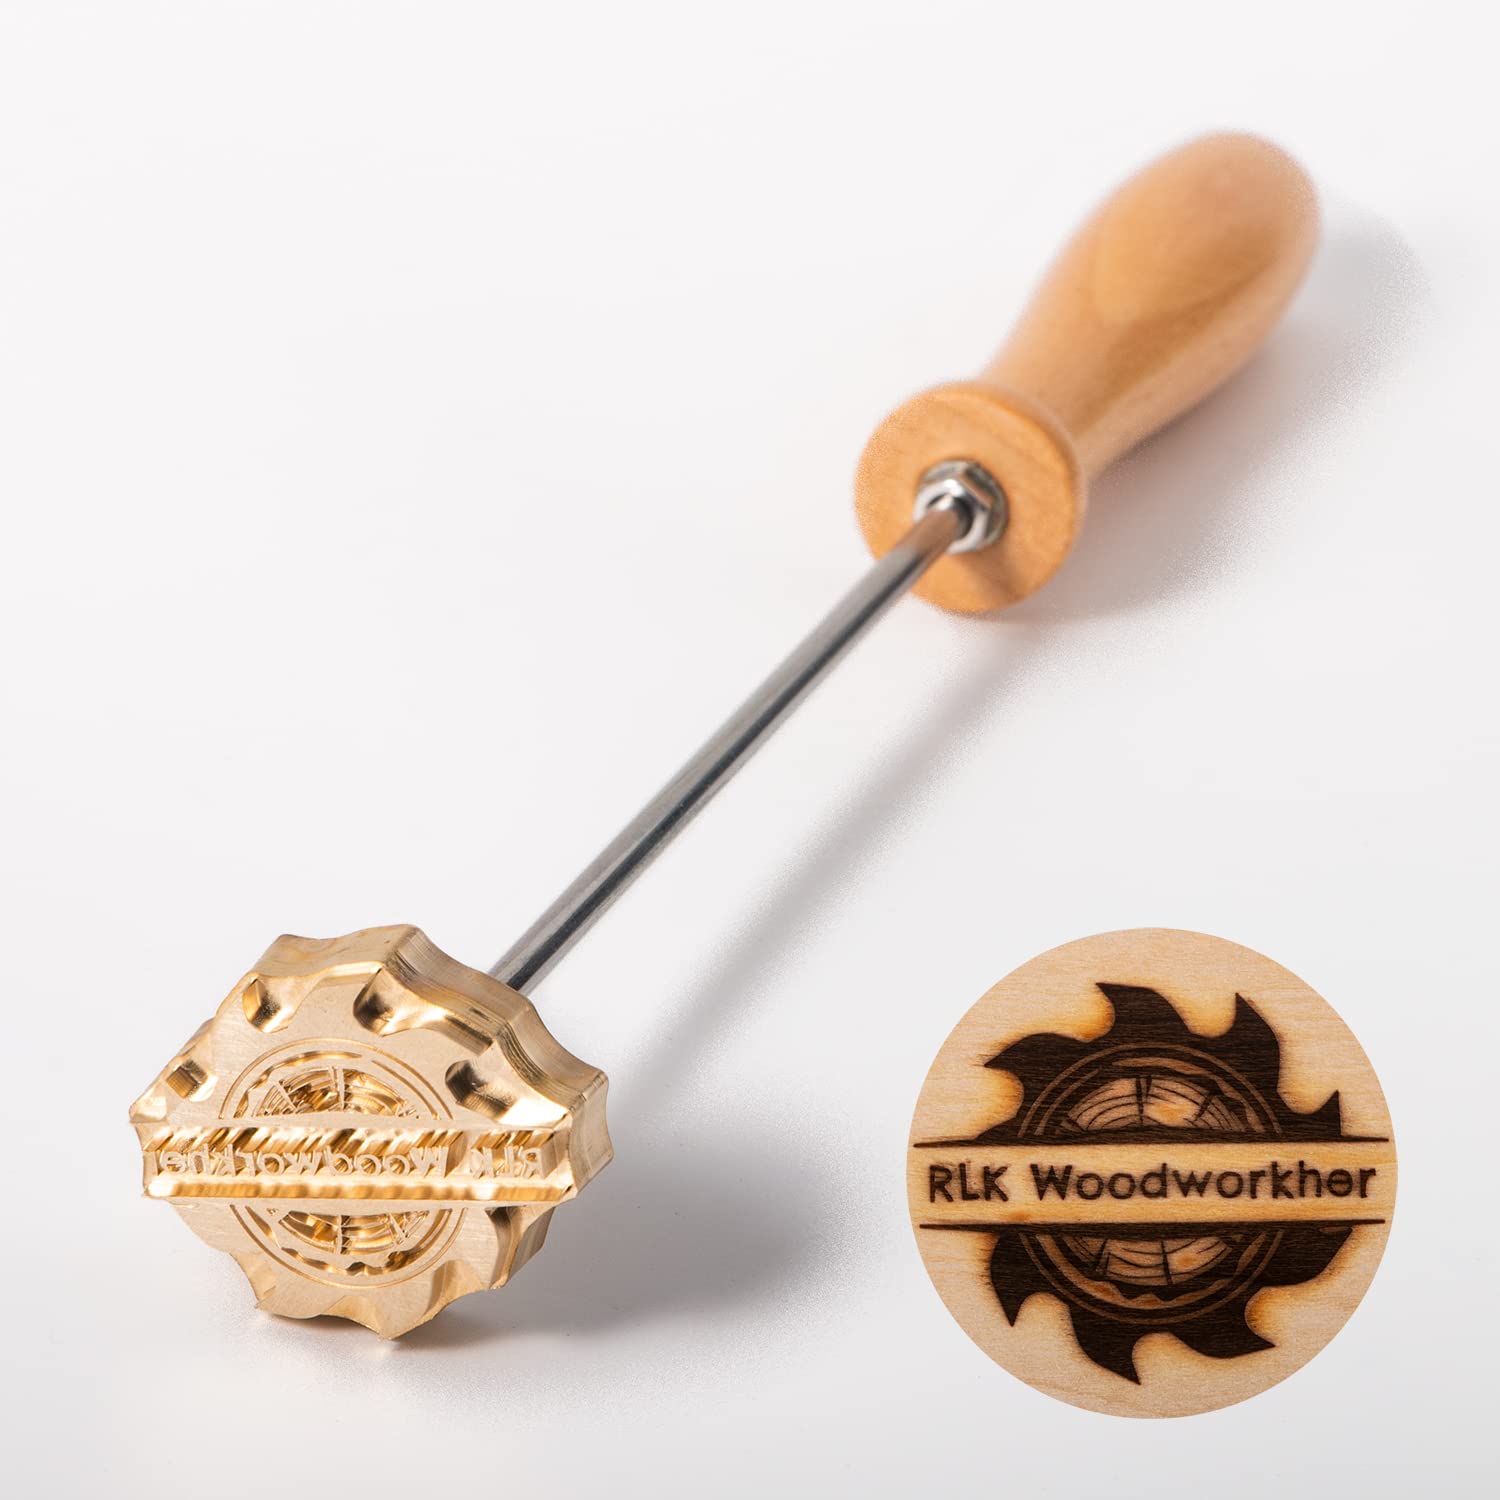 custom logo branding iron for wood